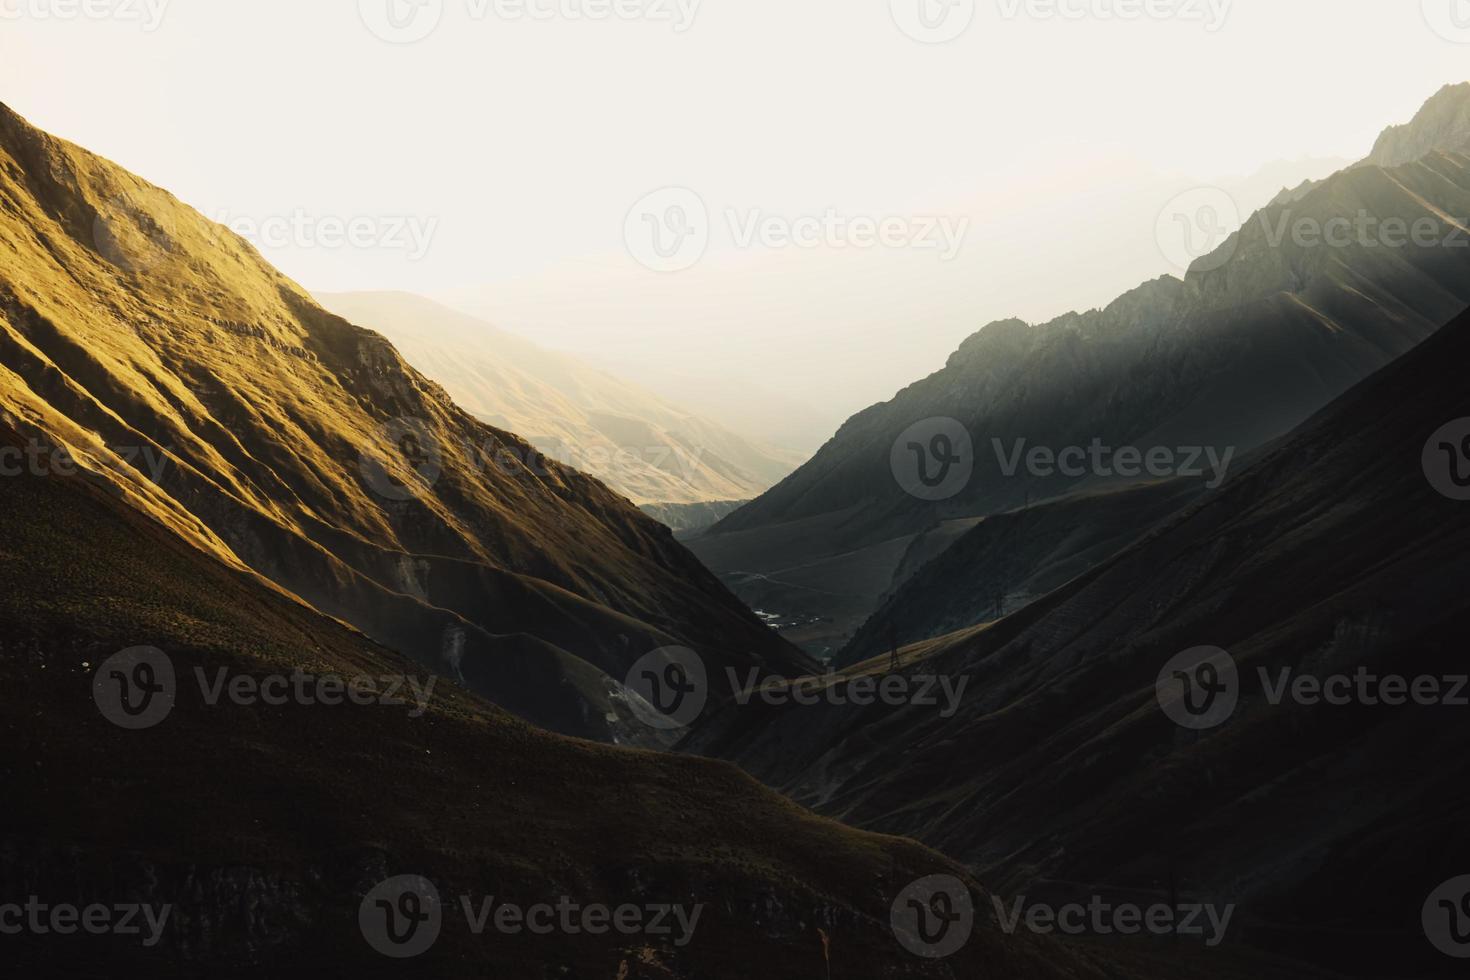 lever du soleil dans les montagnes, chaînes de montagnes dans le brouillard du matin, vue panoramique, illustration vectorielle photo